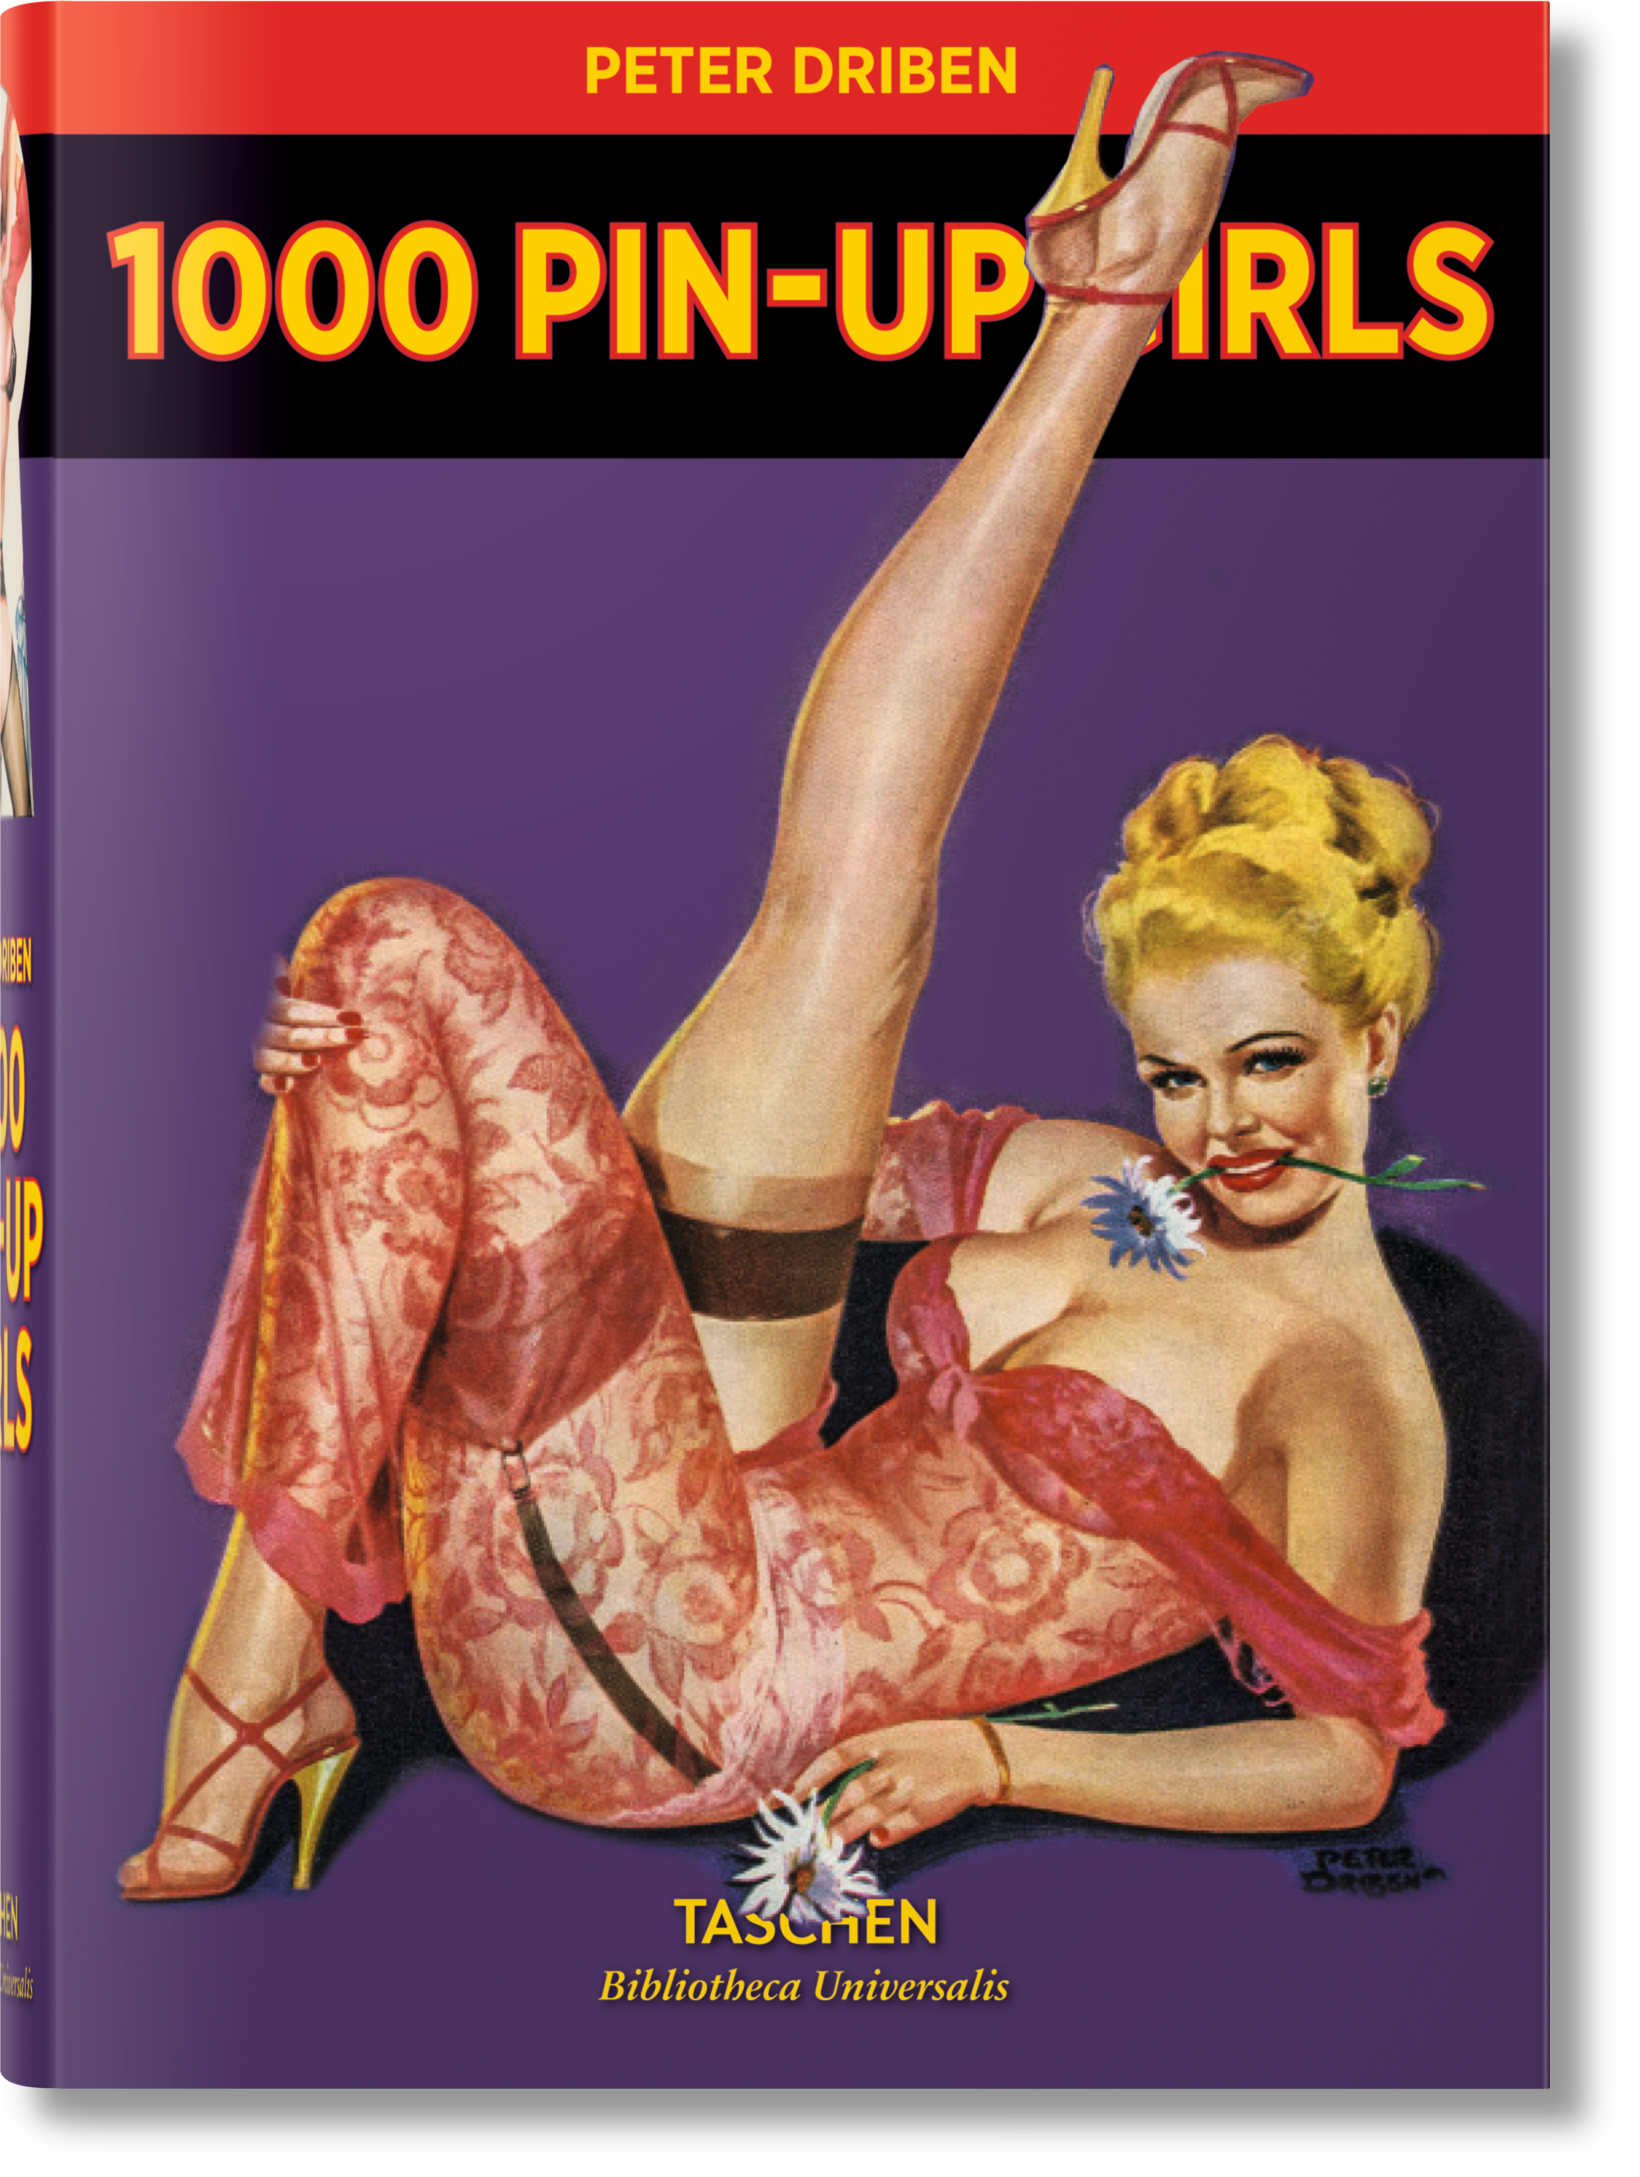 TASCHEN Books: 1000 Pin-Up Girls